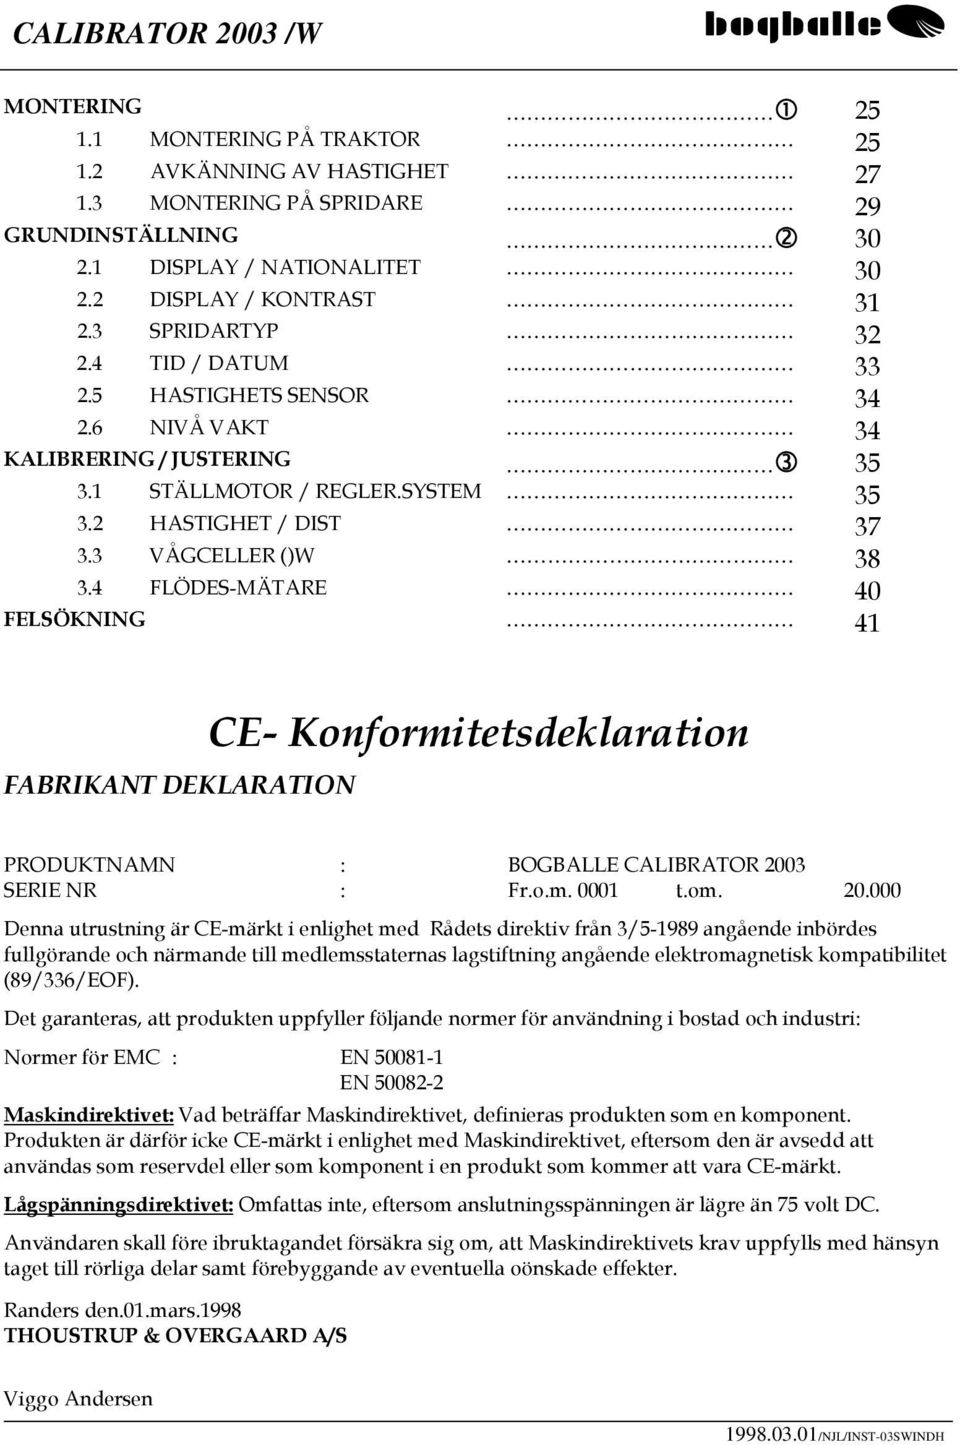 4 FLÖDES-MÄTARE 40 FELSÖKNING 41 FABRIKANT DEKLARATION CE- Konformitetsdeklaration PRODUKTNAMN : BOGBALLE CALIBRATOR 200